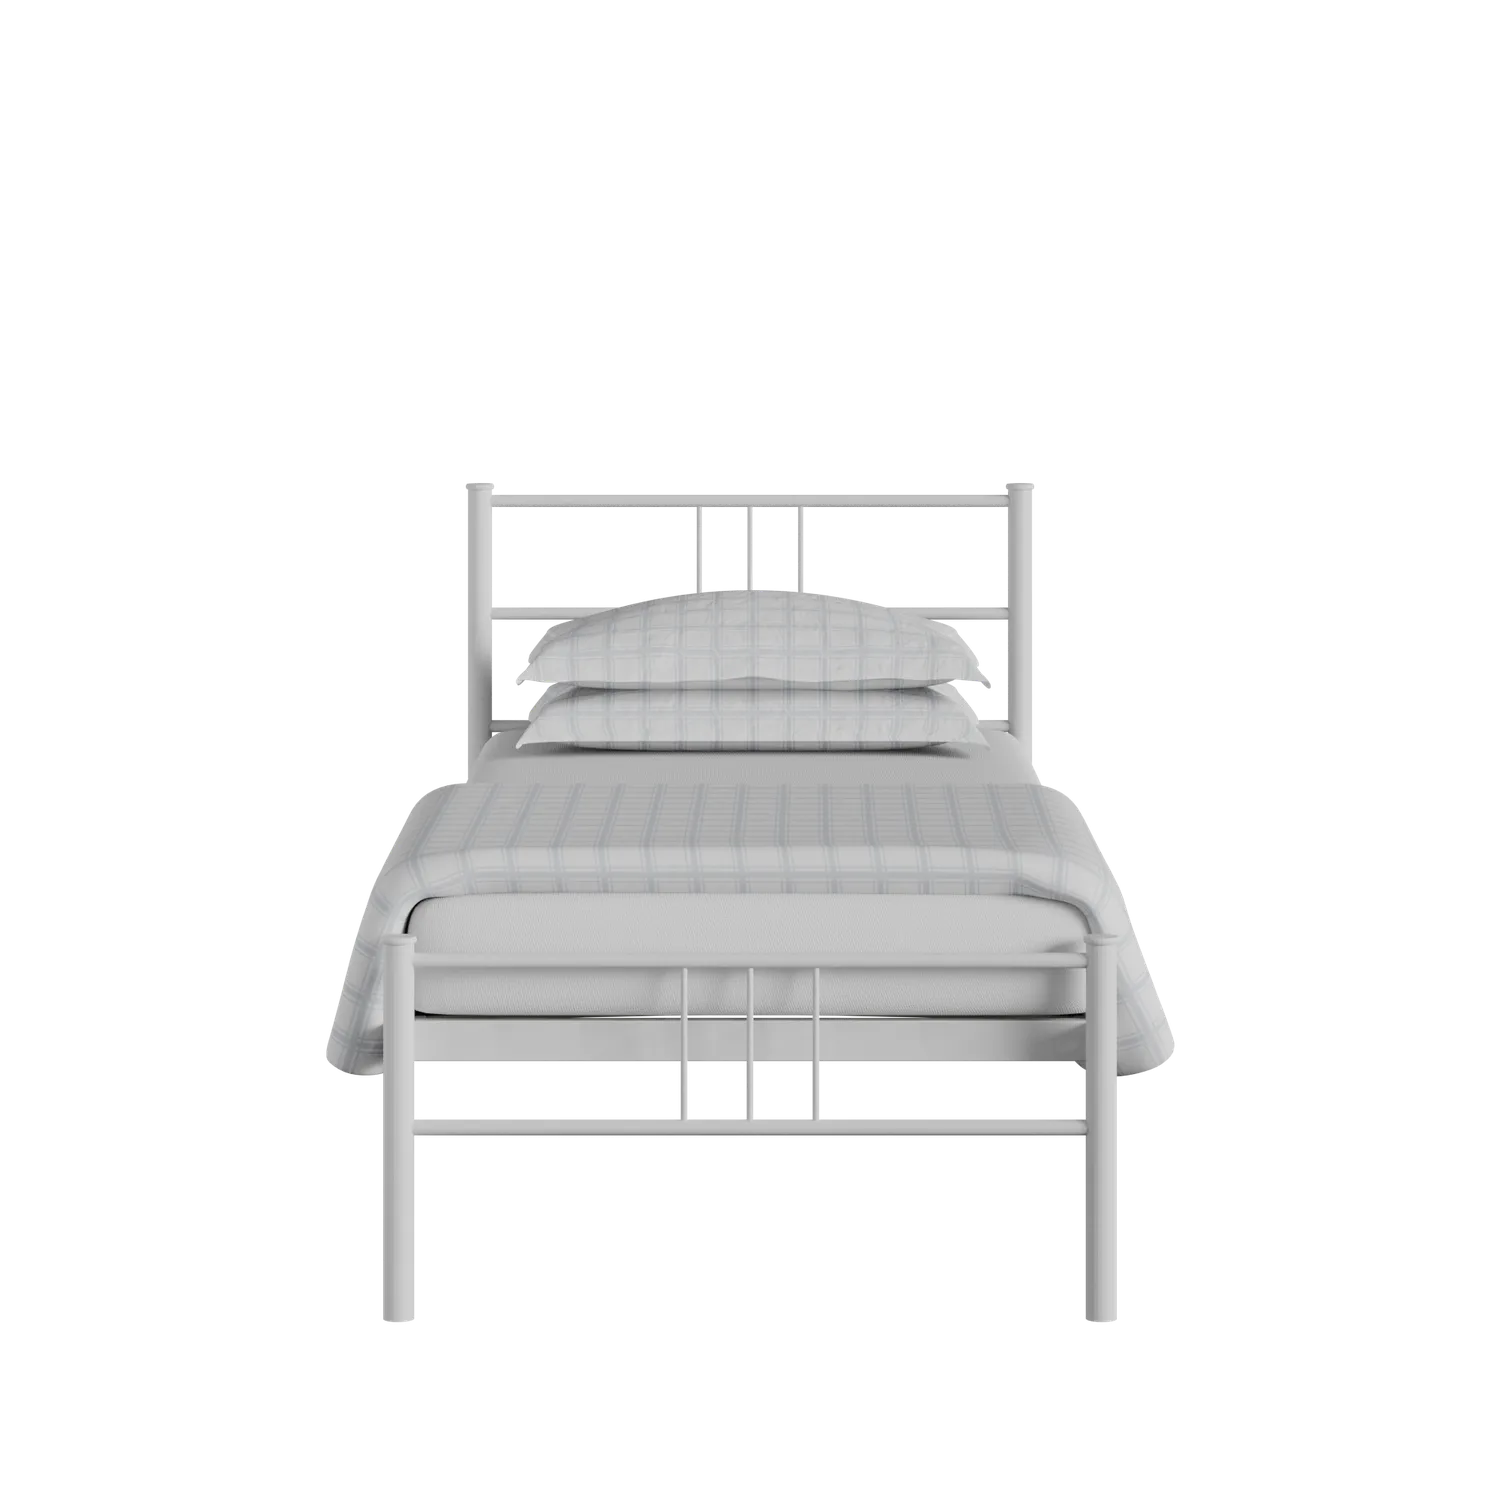 Mortlake cama individual de metal en blanco